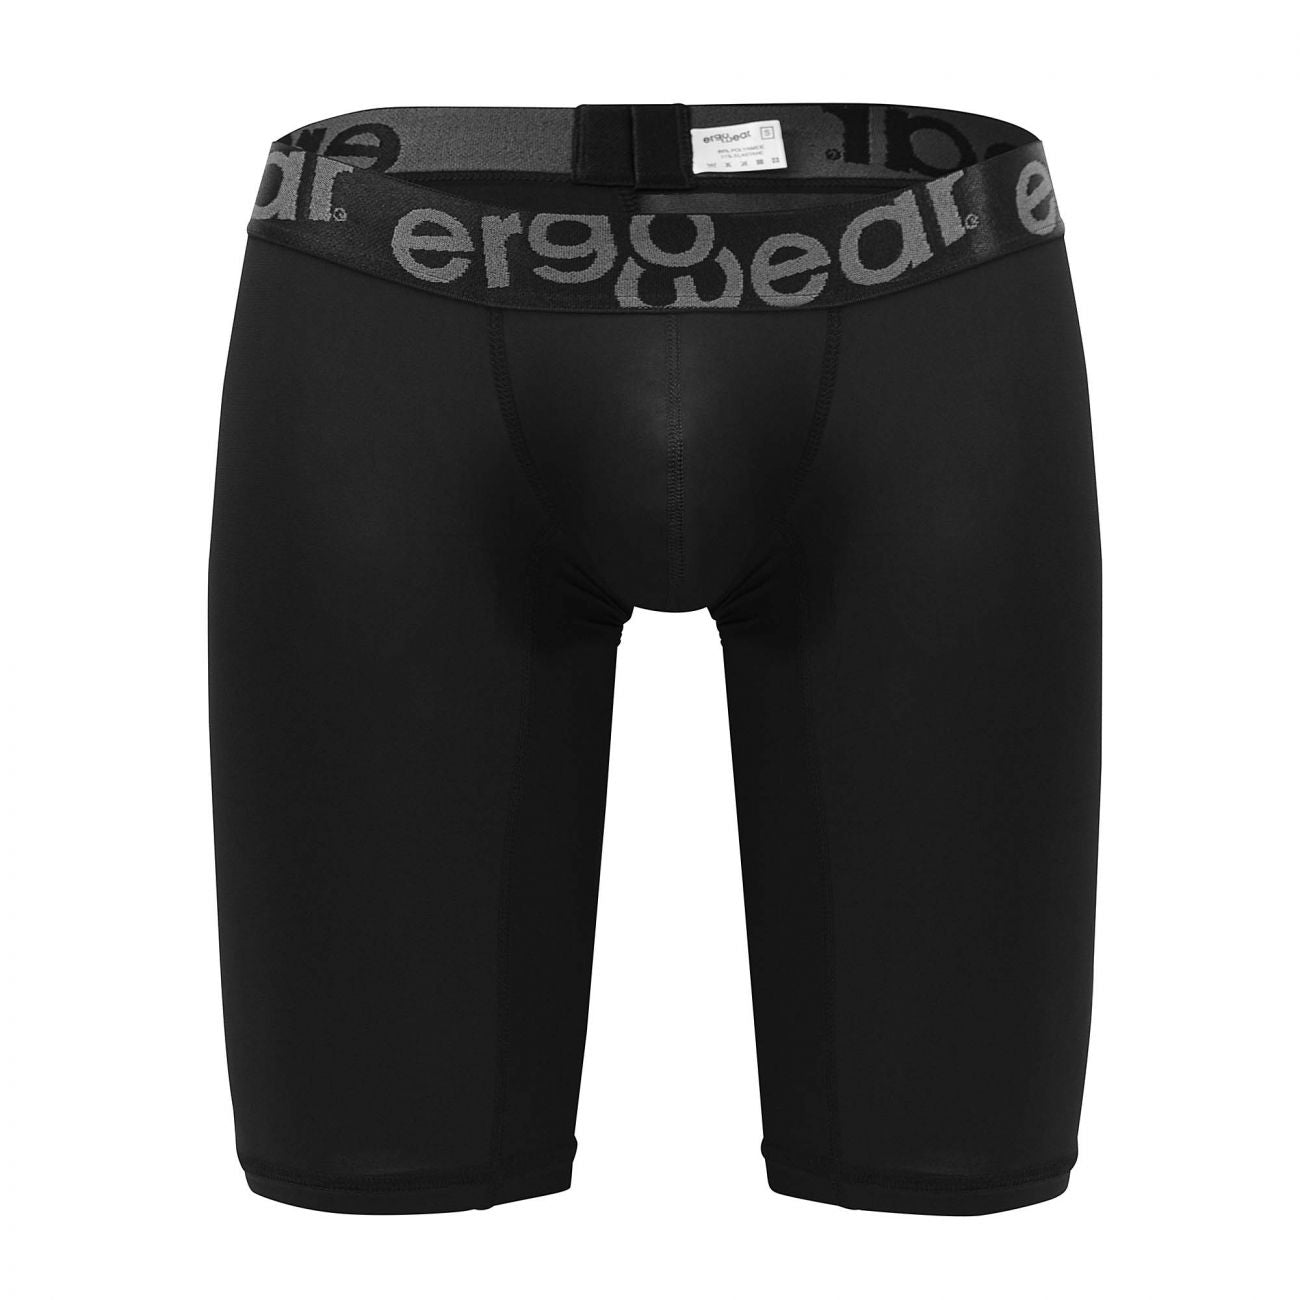 ErgoWear MAX XV Boxer Briefs